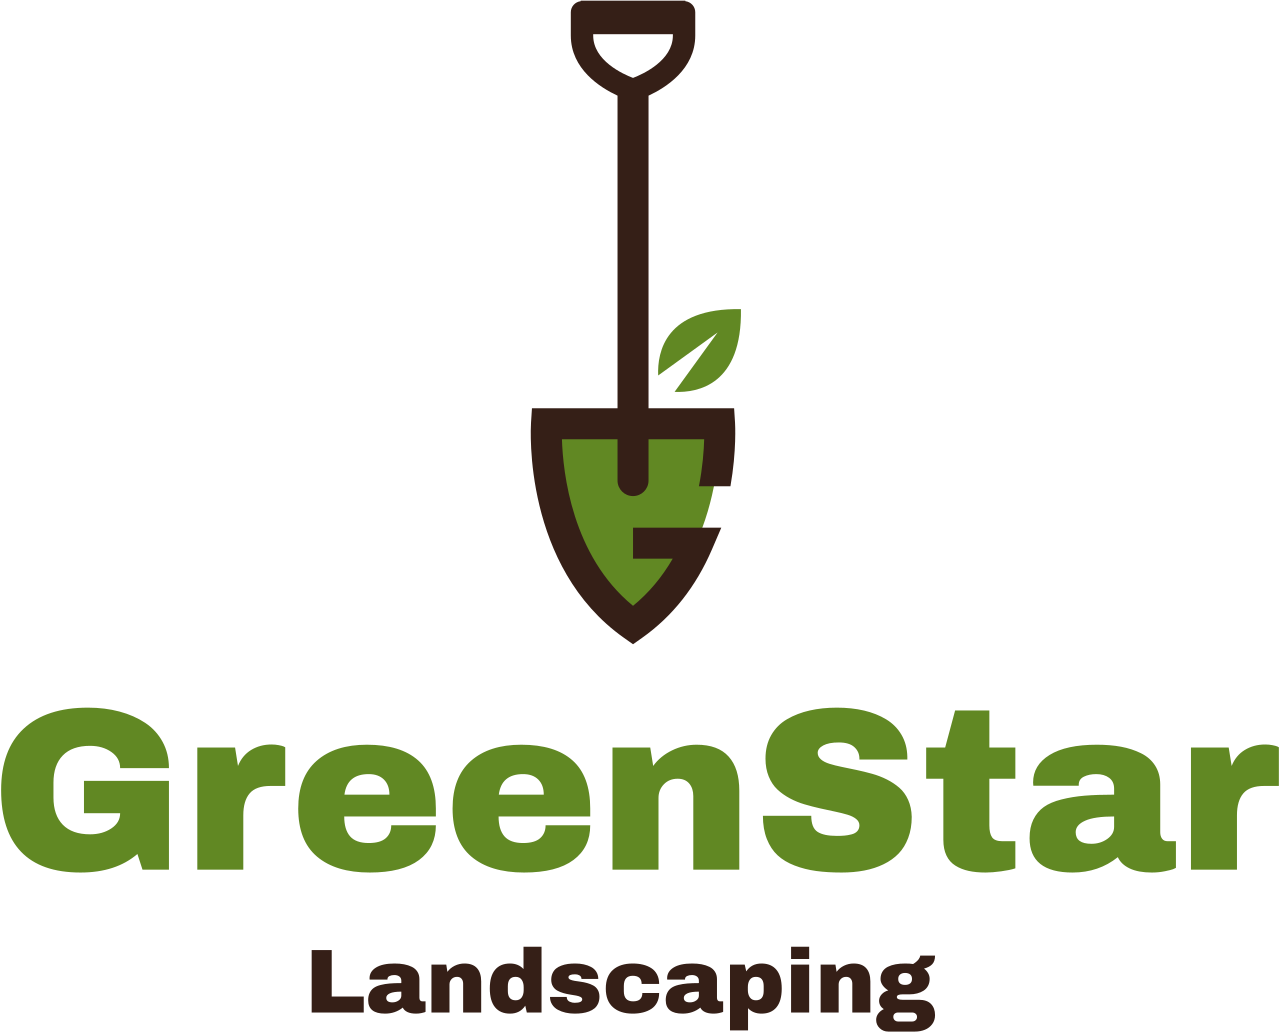 GreenStar's logo